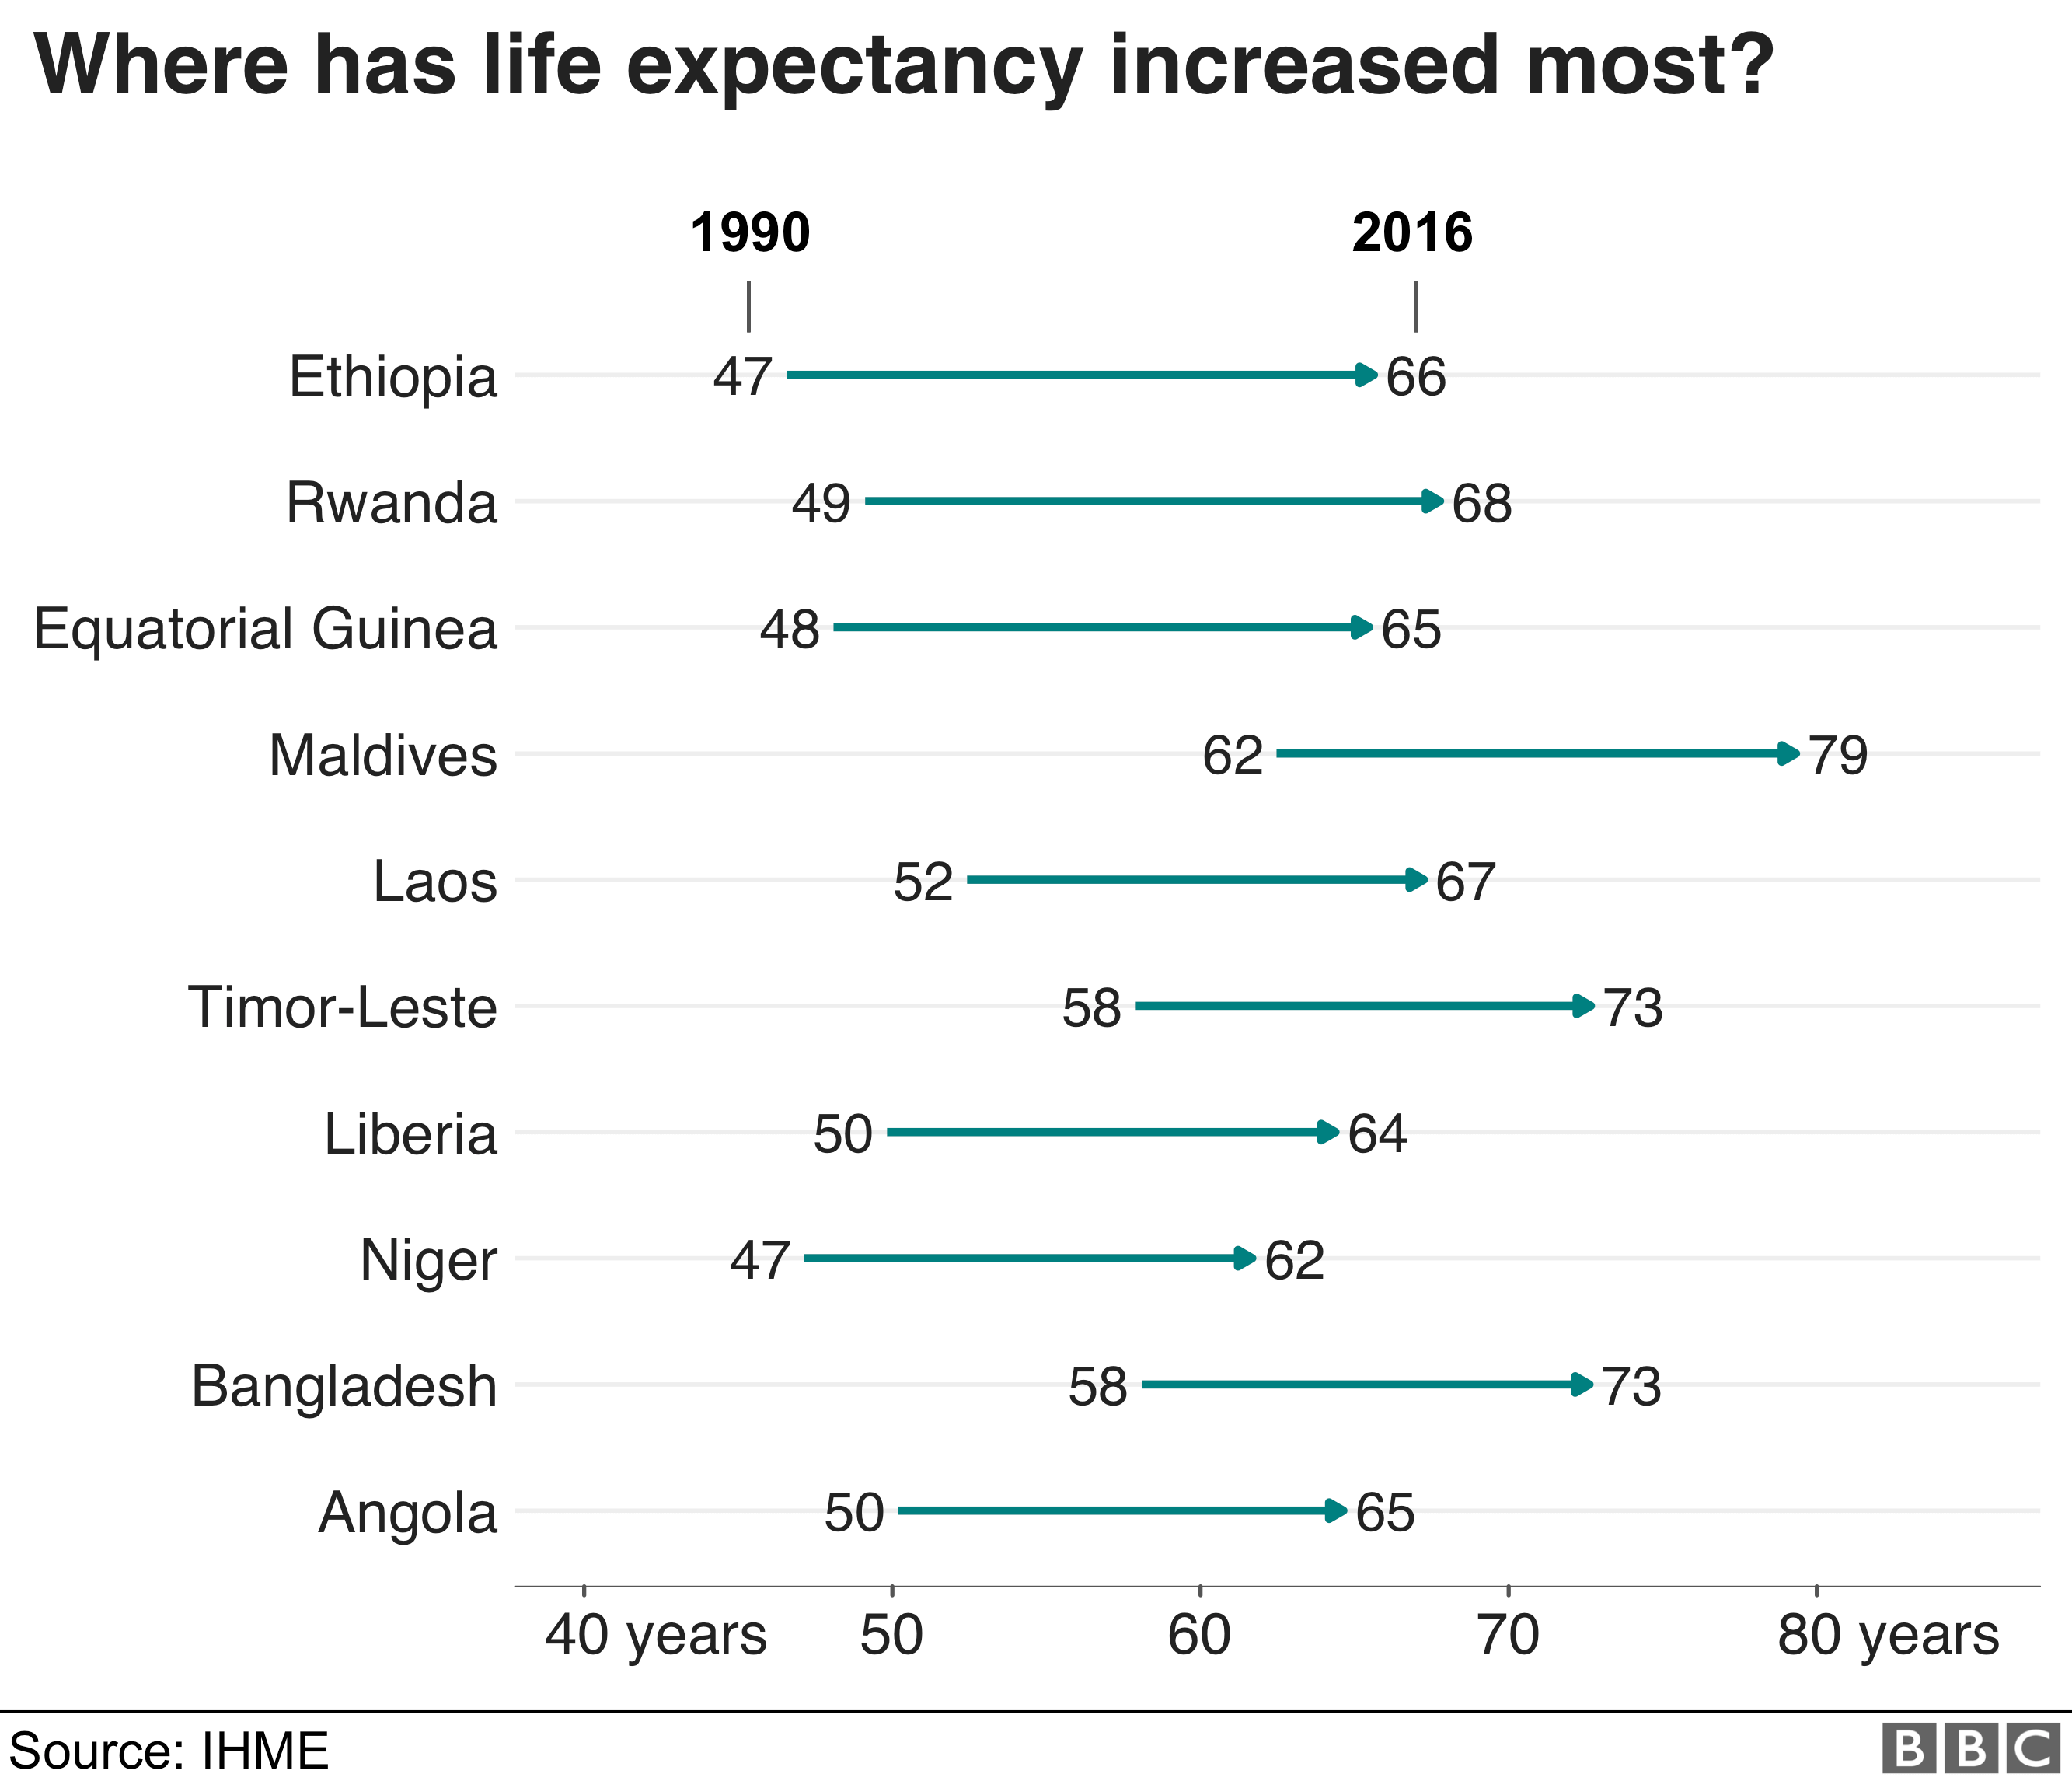 С 1990 года ожидаемая продолжительность жизни в Эфиопии увеличилась больше всего с 47 до 66 лет